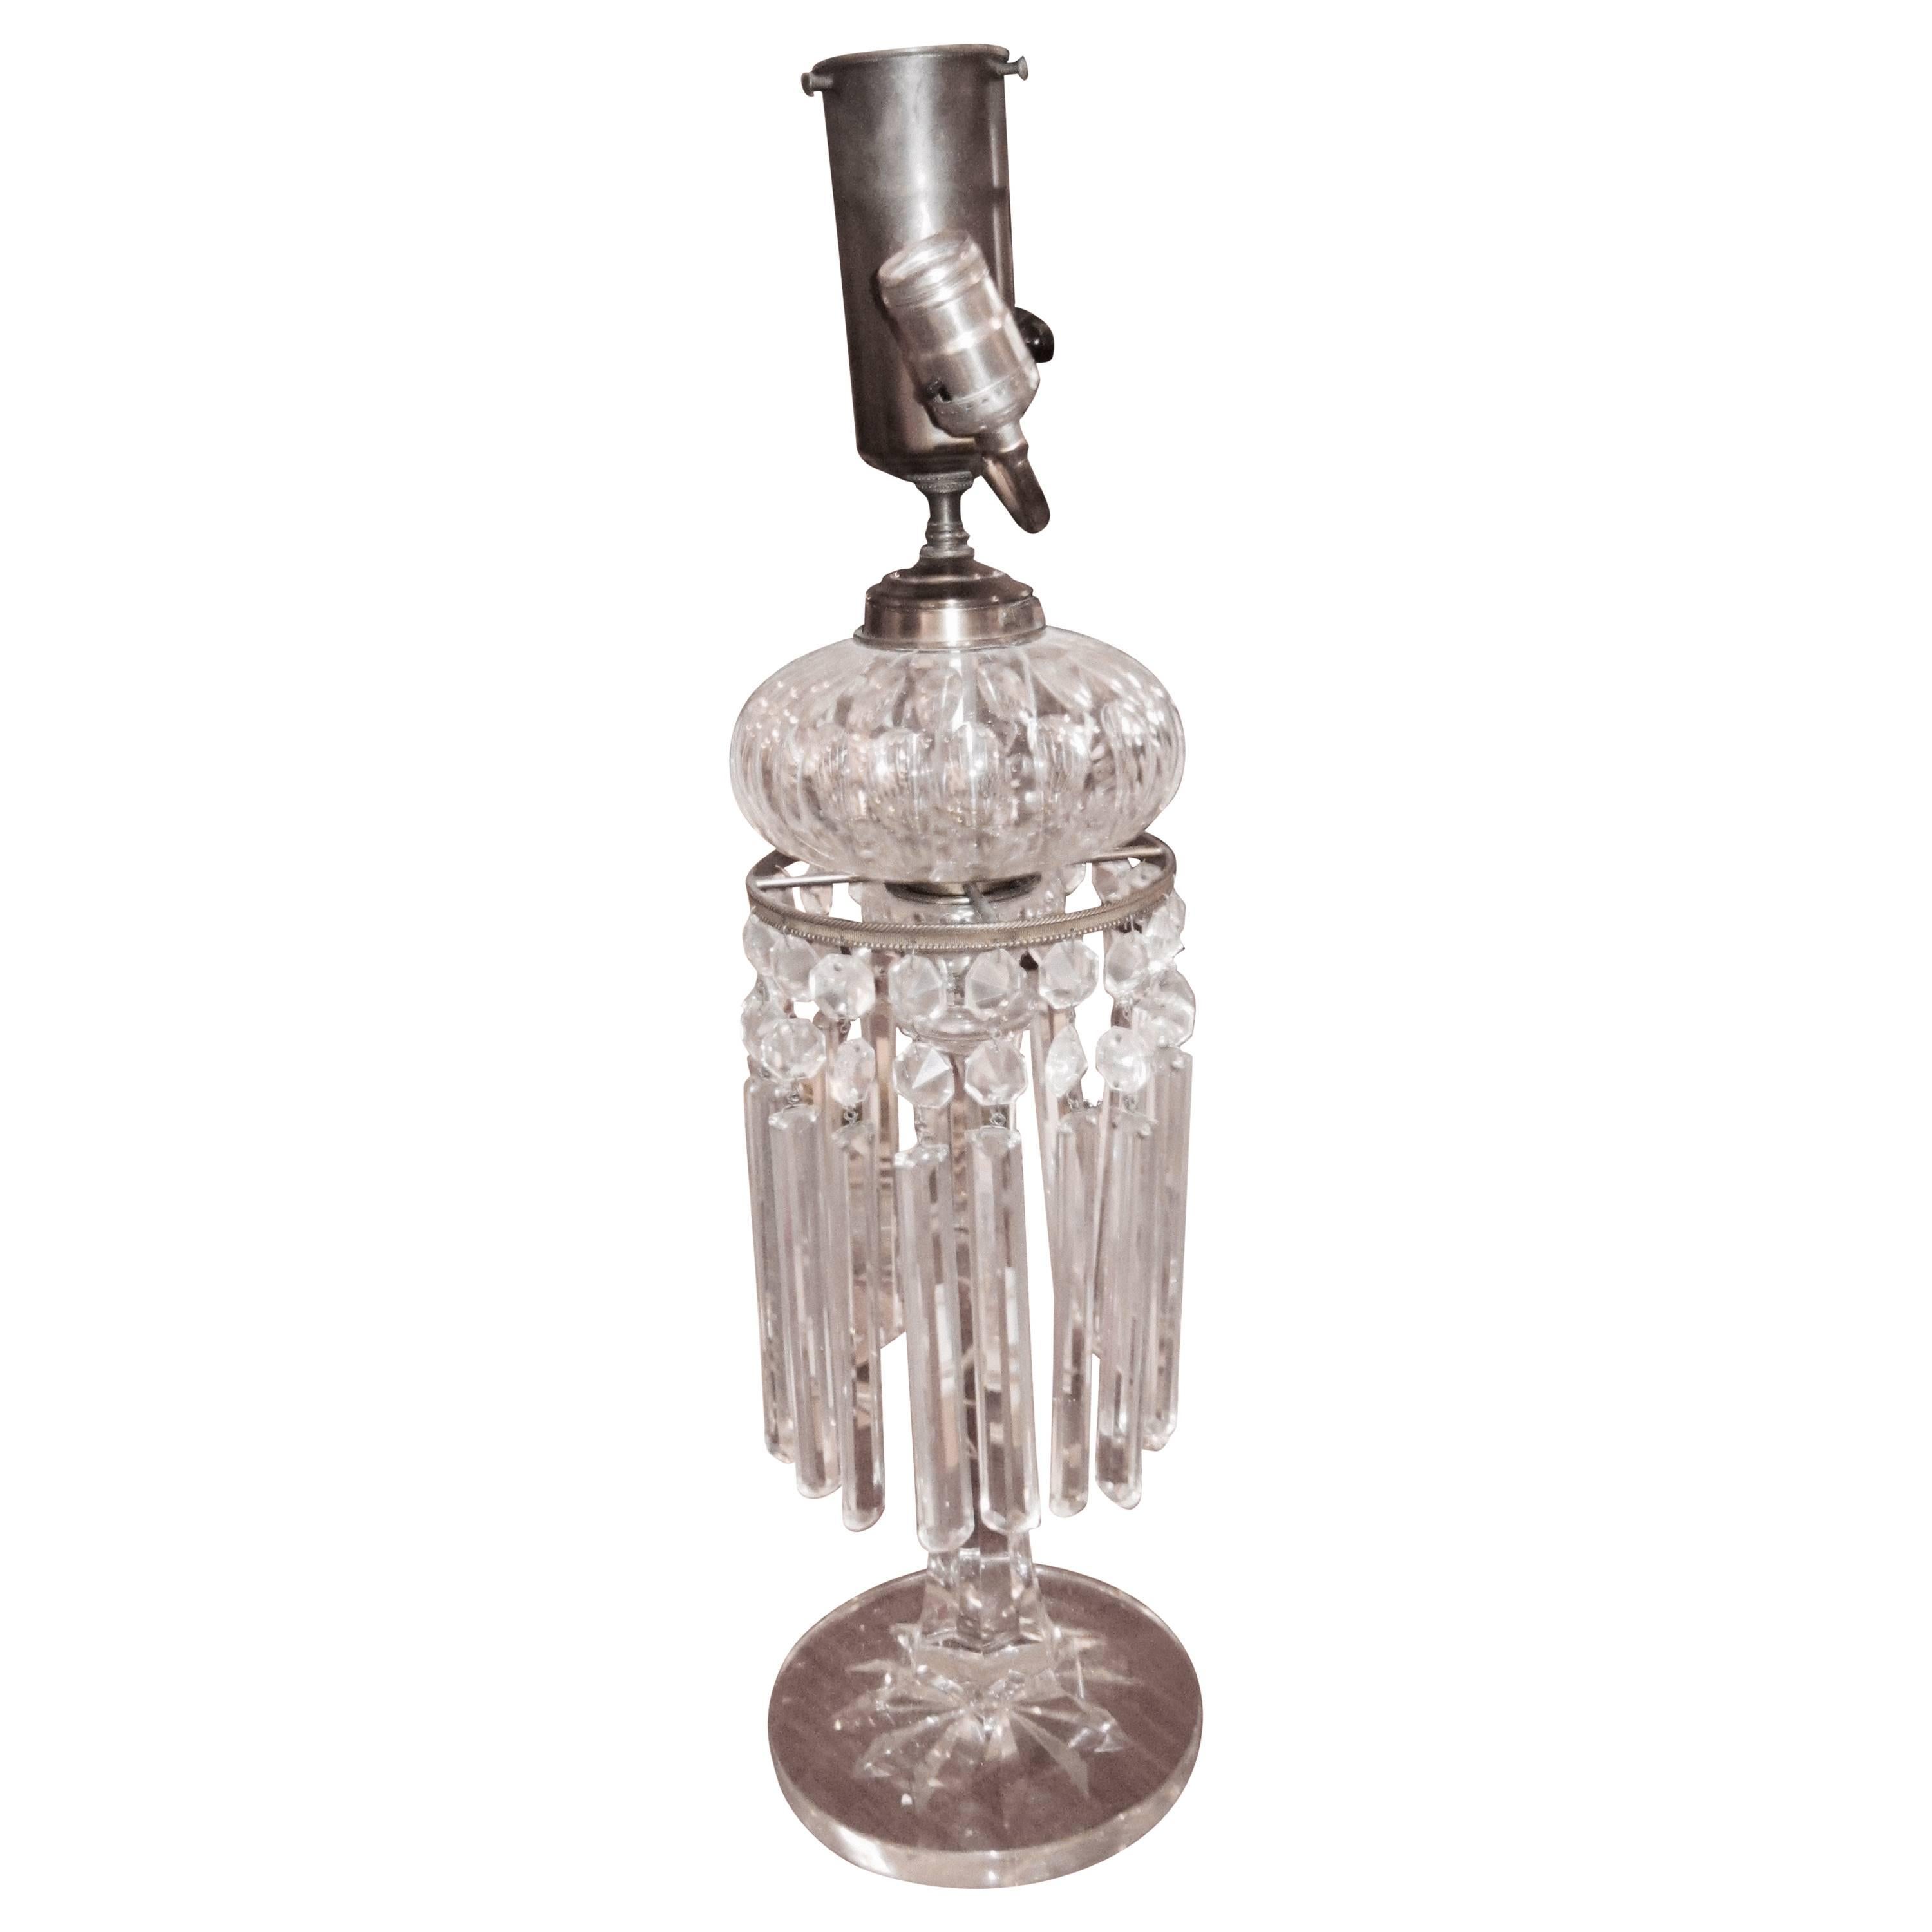 Belle lampe à huile anglaise du 19ème siècle en cristal taillé monté en lampe